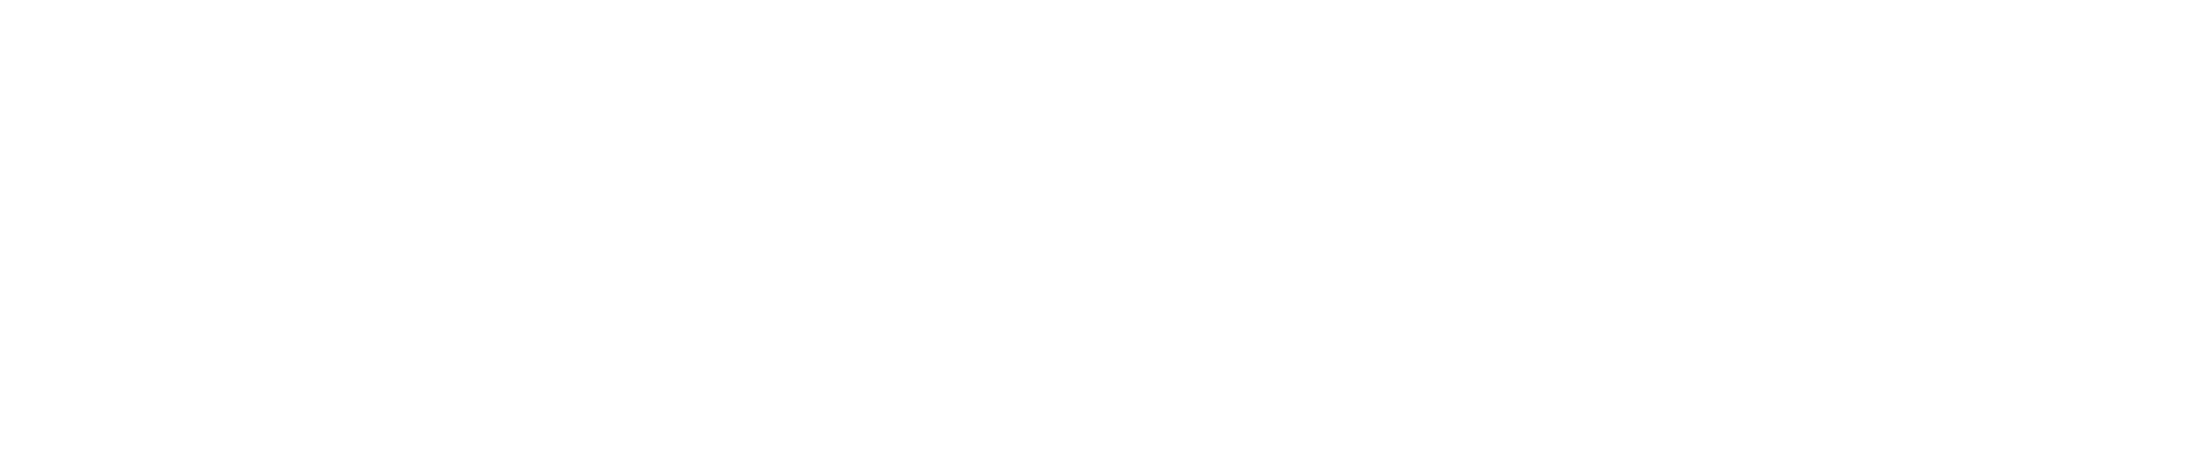 Gartner Digital Markets Logo